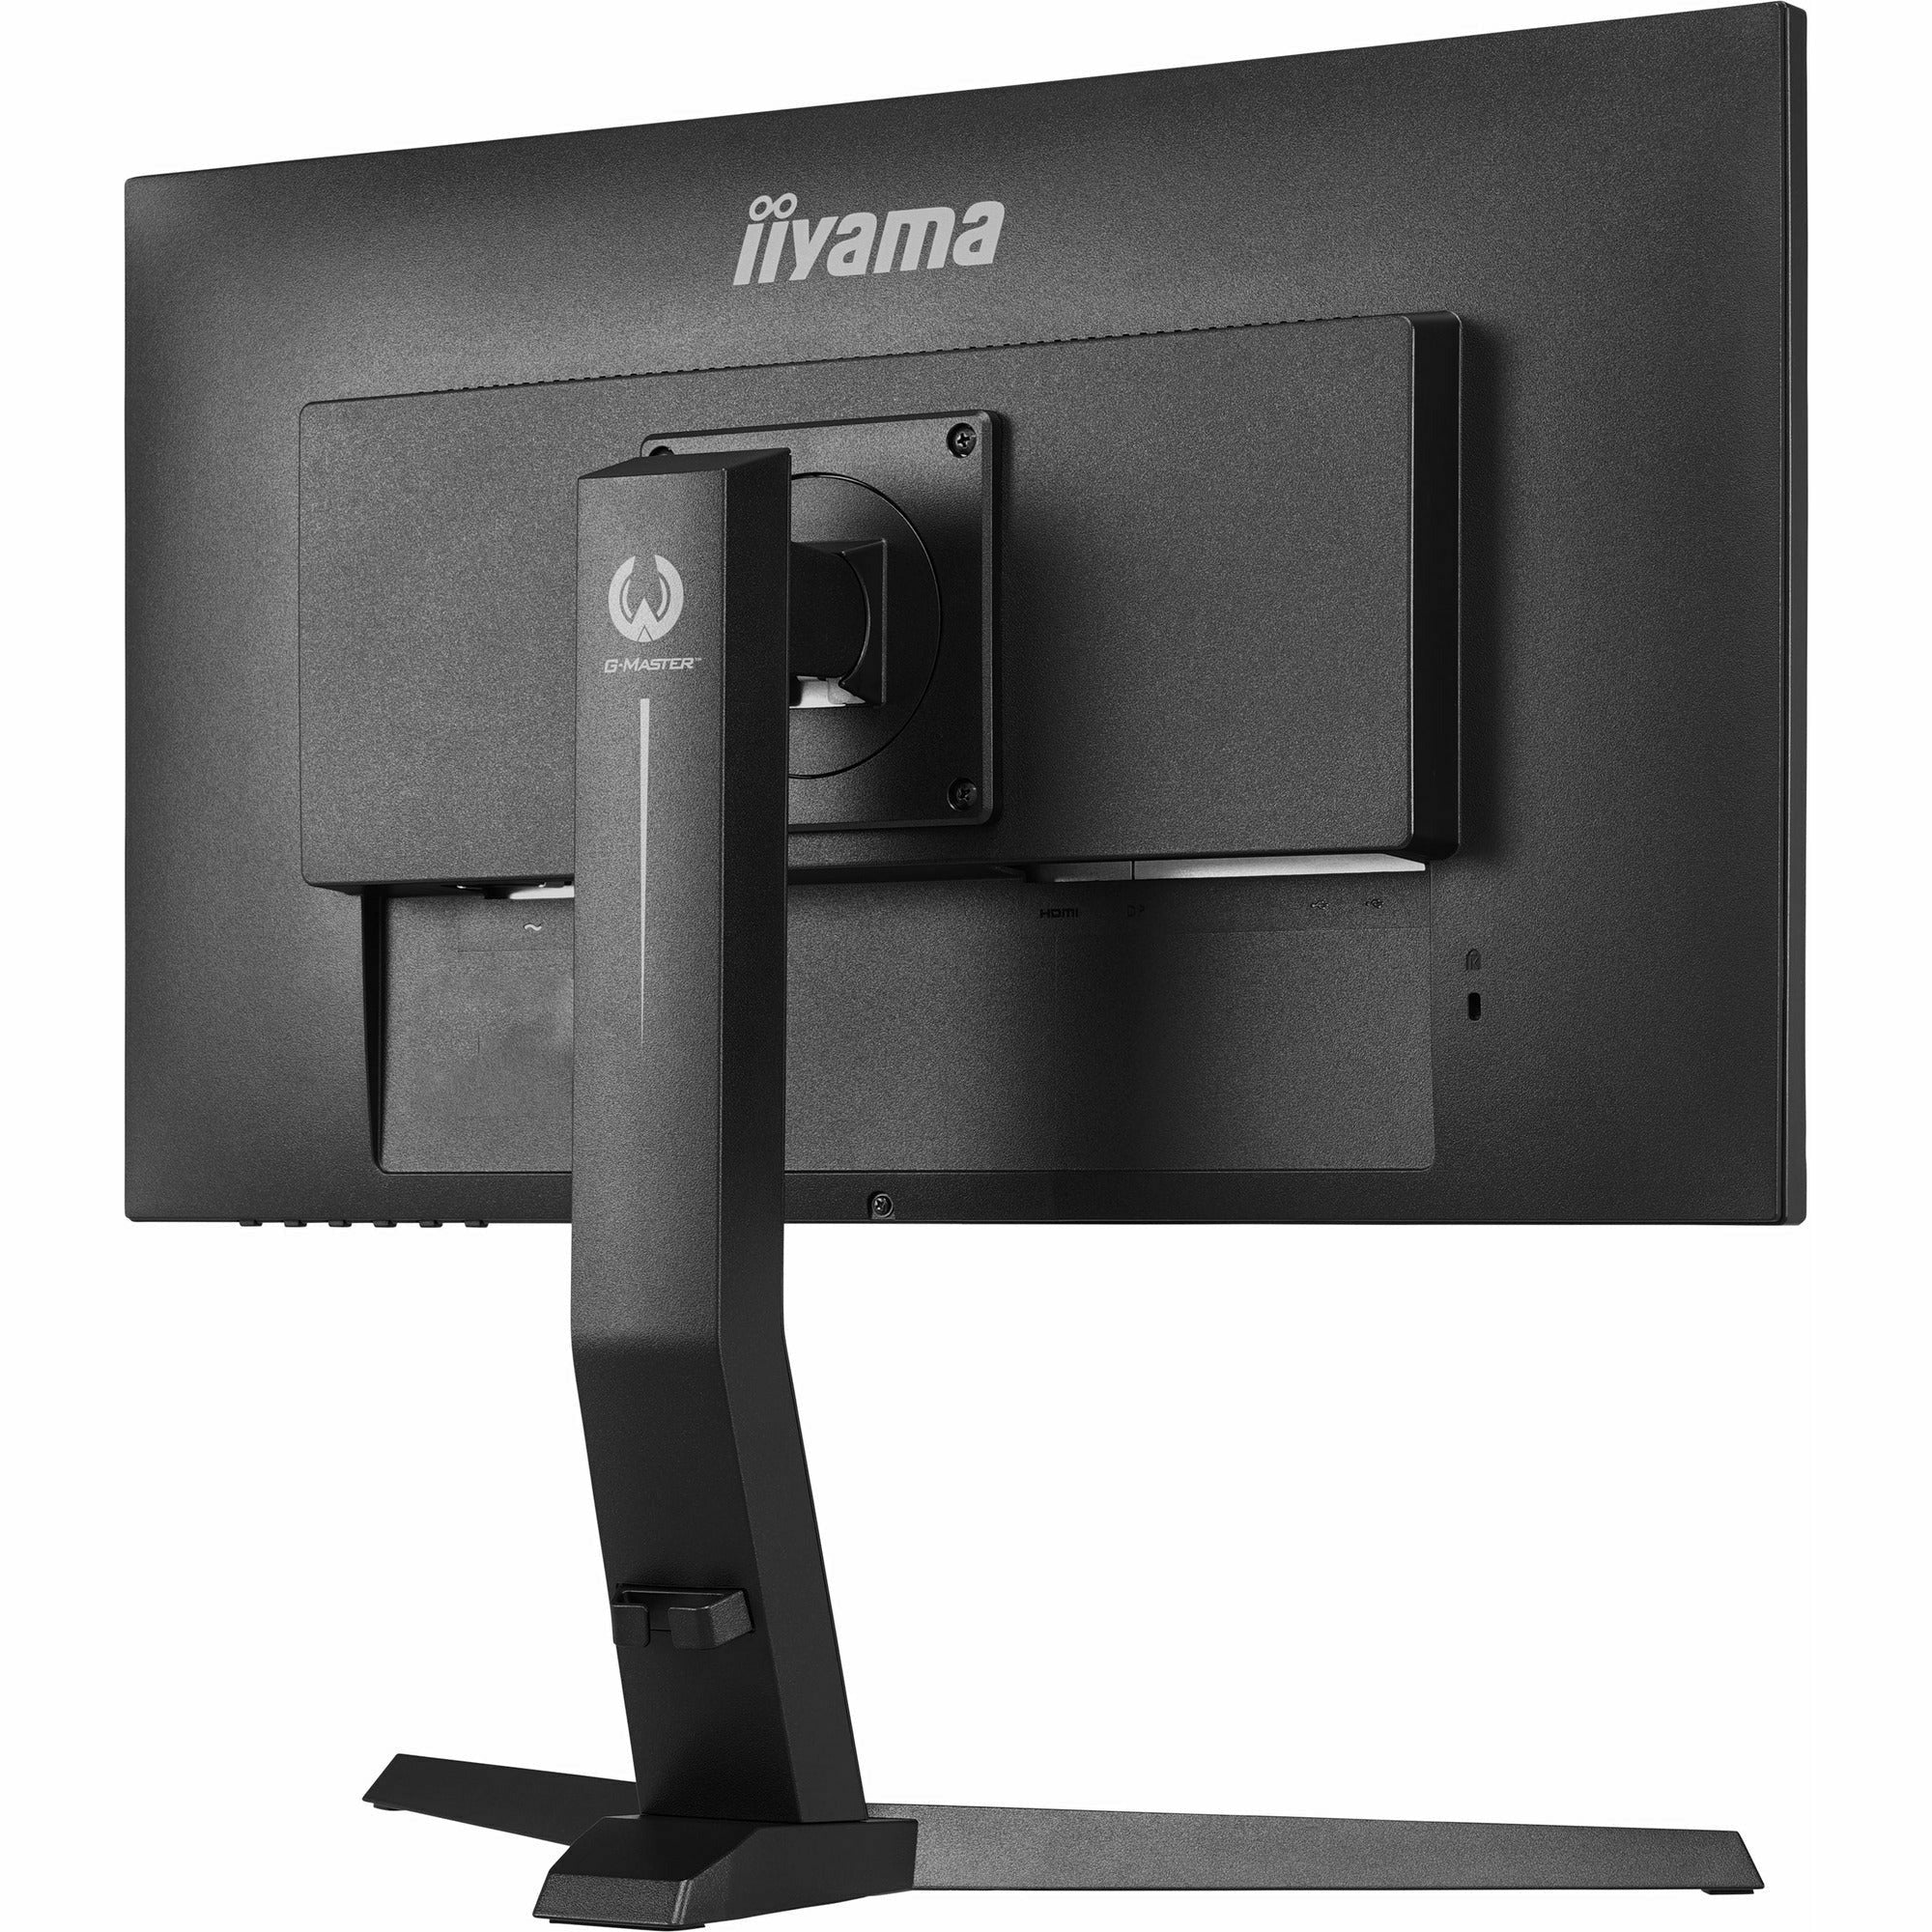 iiyama G-Master GB2790QSU-B1  27" Fast (FLC) IPS LCD, 240Hz, 1ms Pro eSports Gaming Monitor